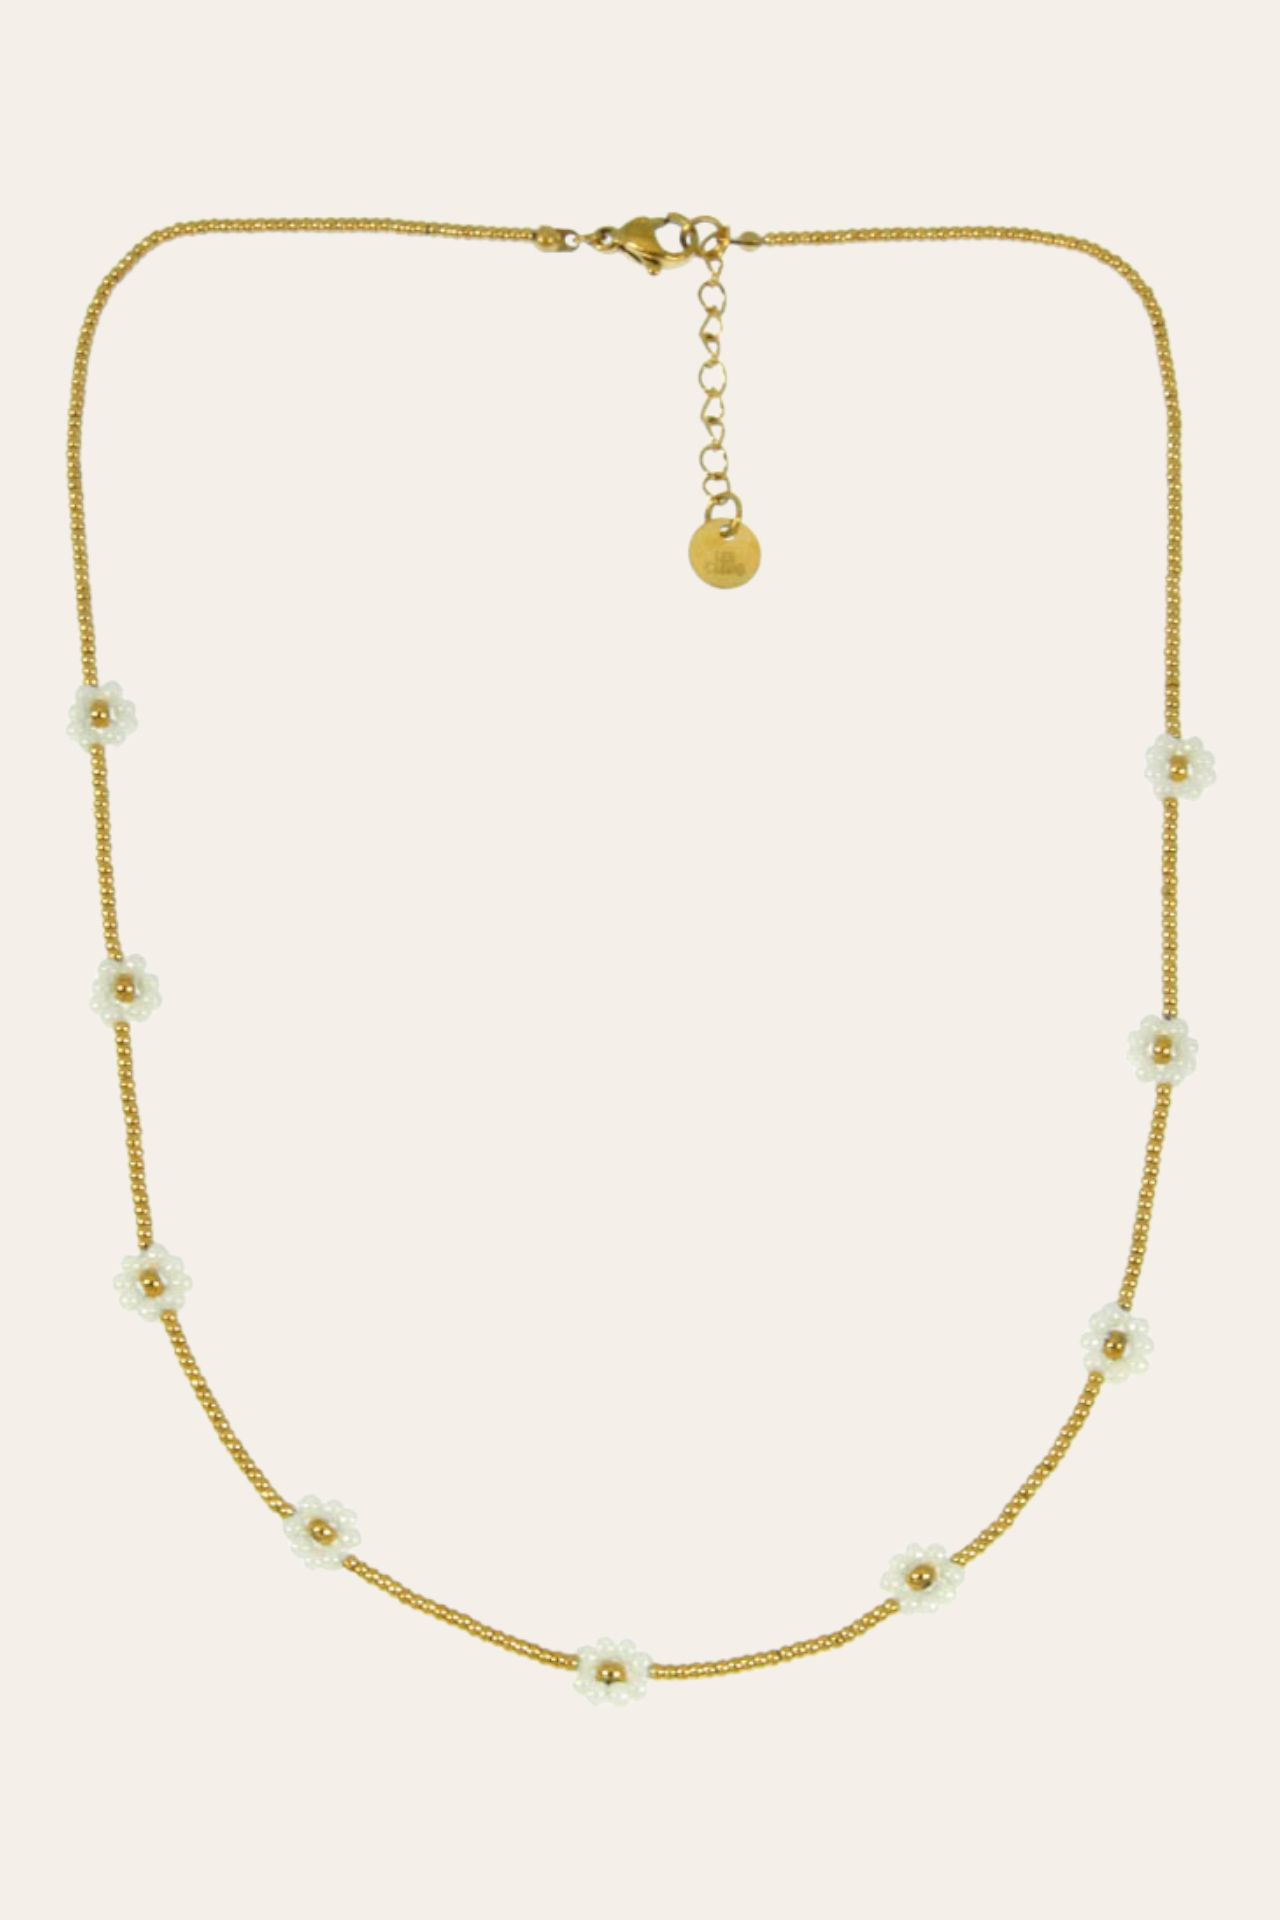 Prairie steel necklace